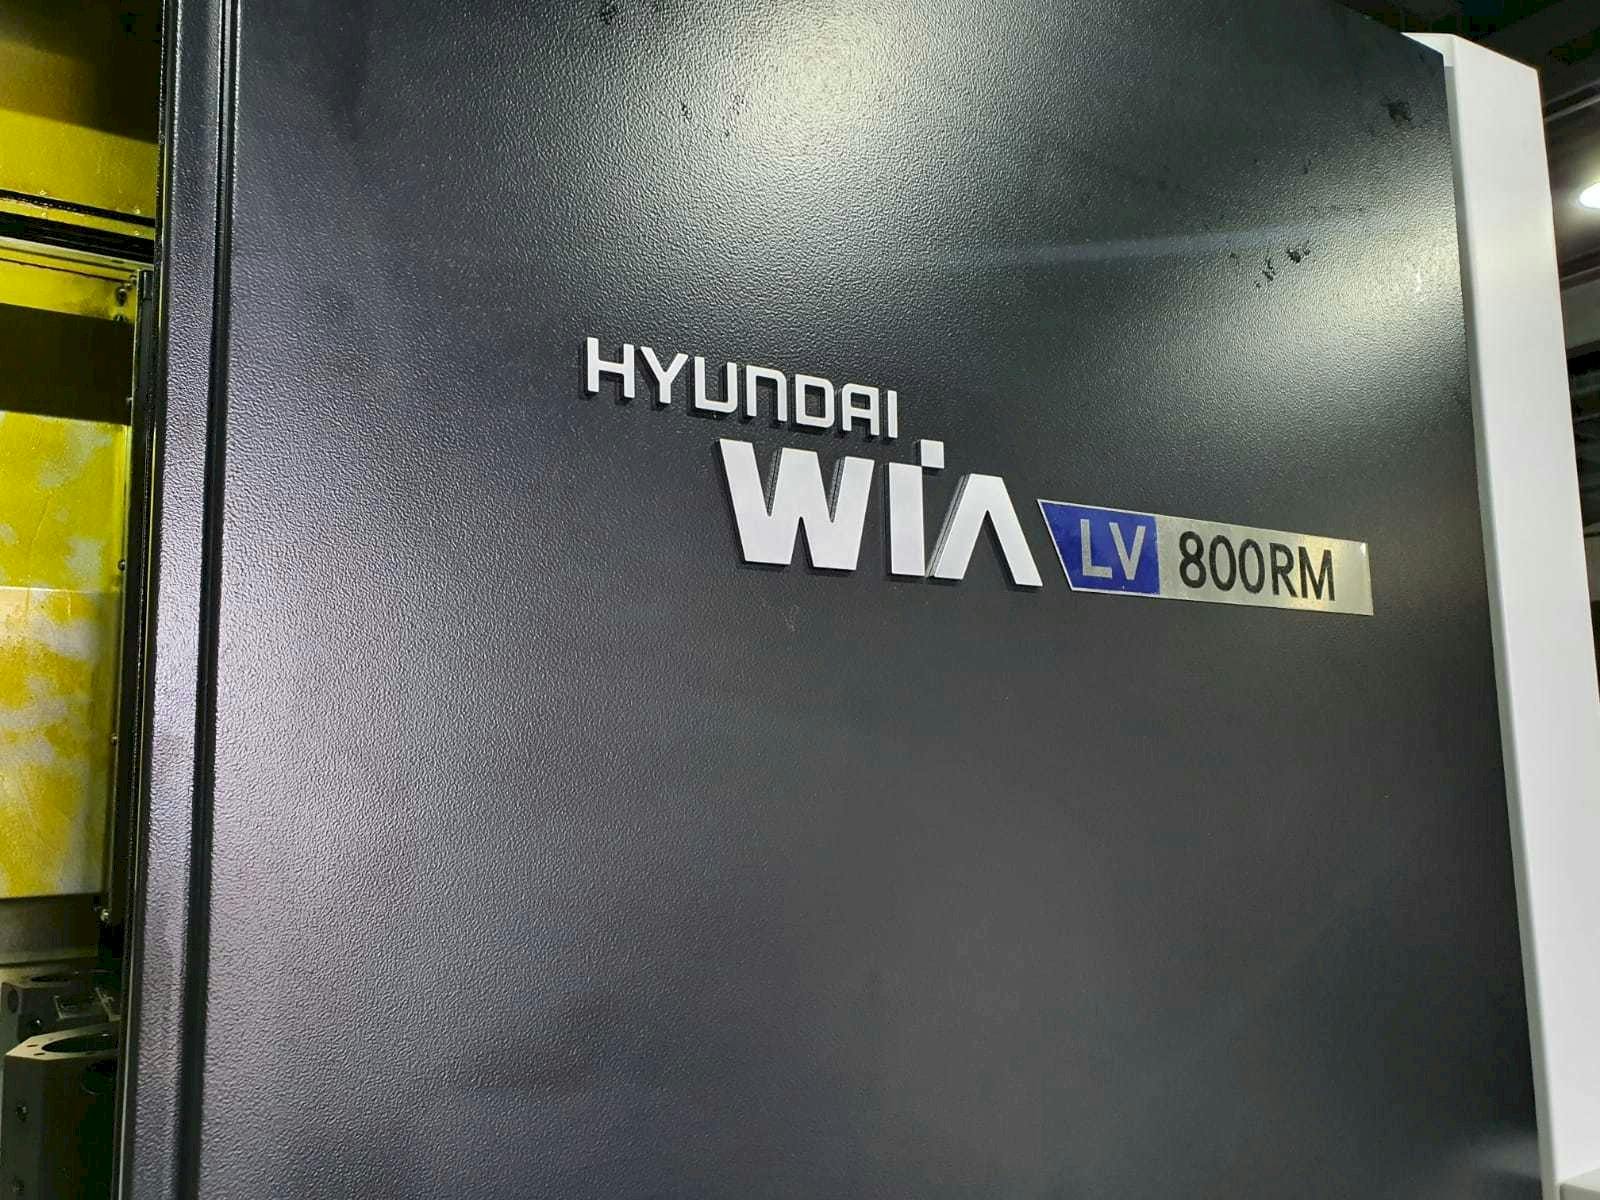 Vista frontal de la máquina Hyundai Wia LV800RM